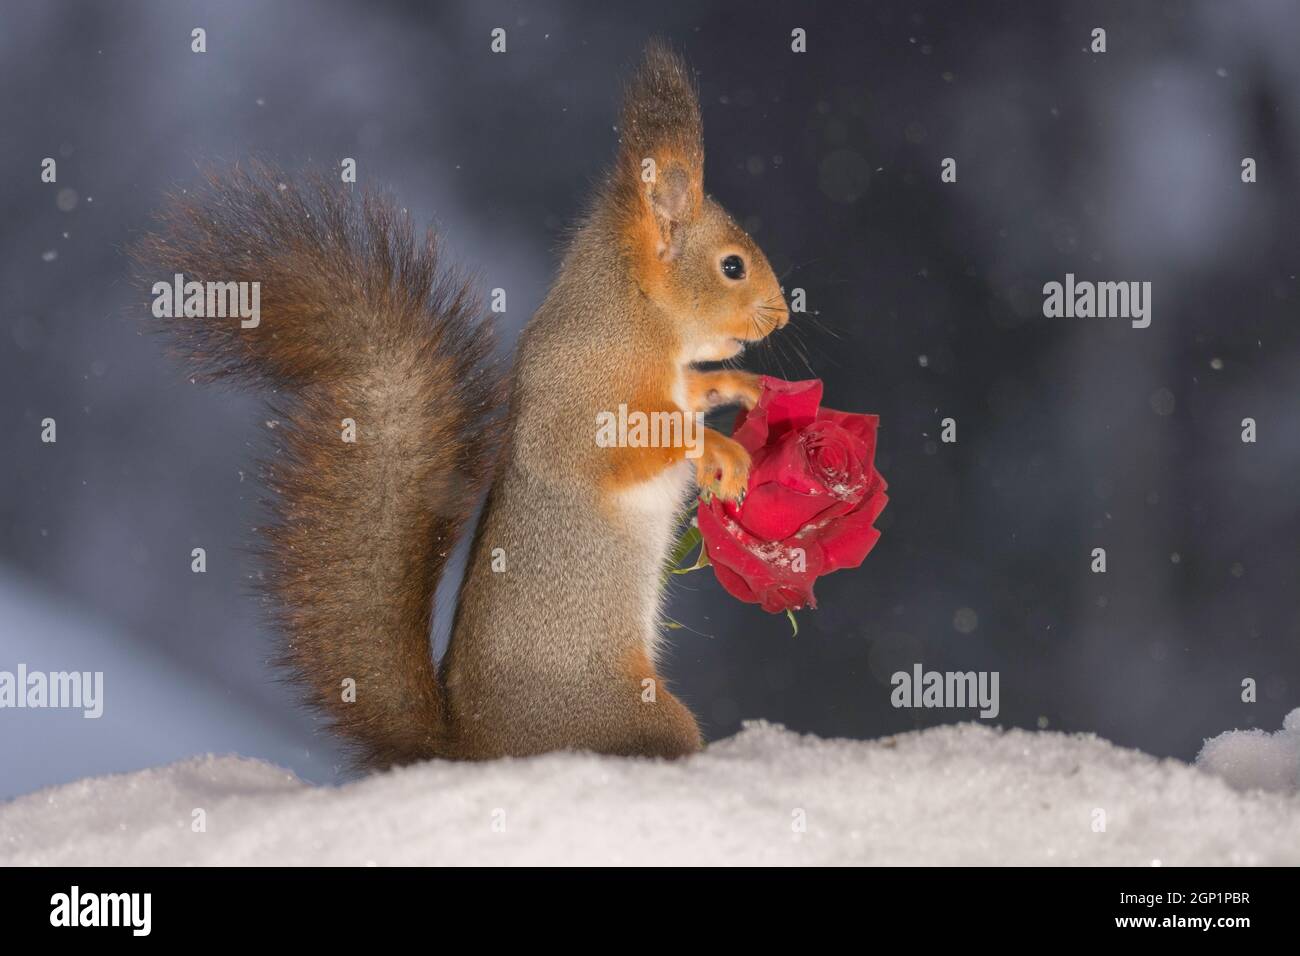 Eichhörnchen zu greifen, auf der Suche und halten eine rote Rose und schneit Stockfoto